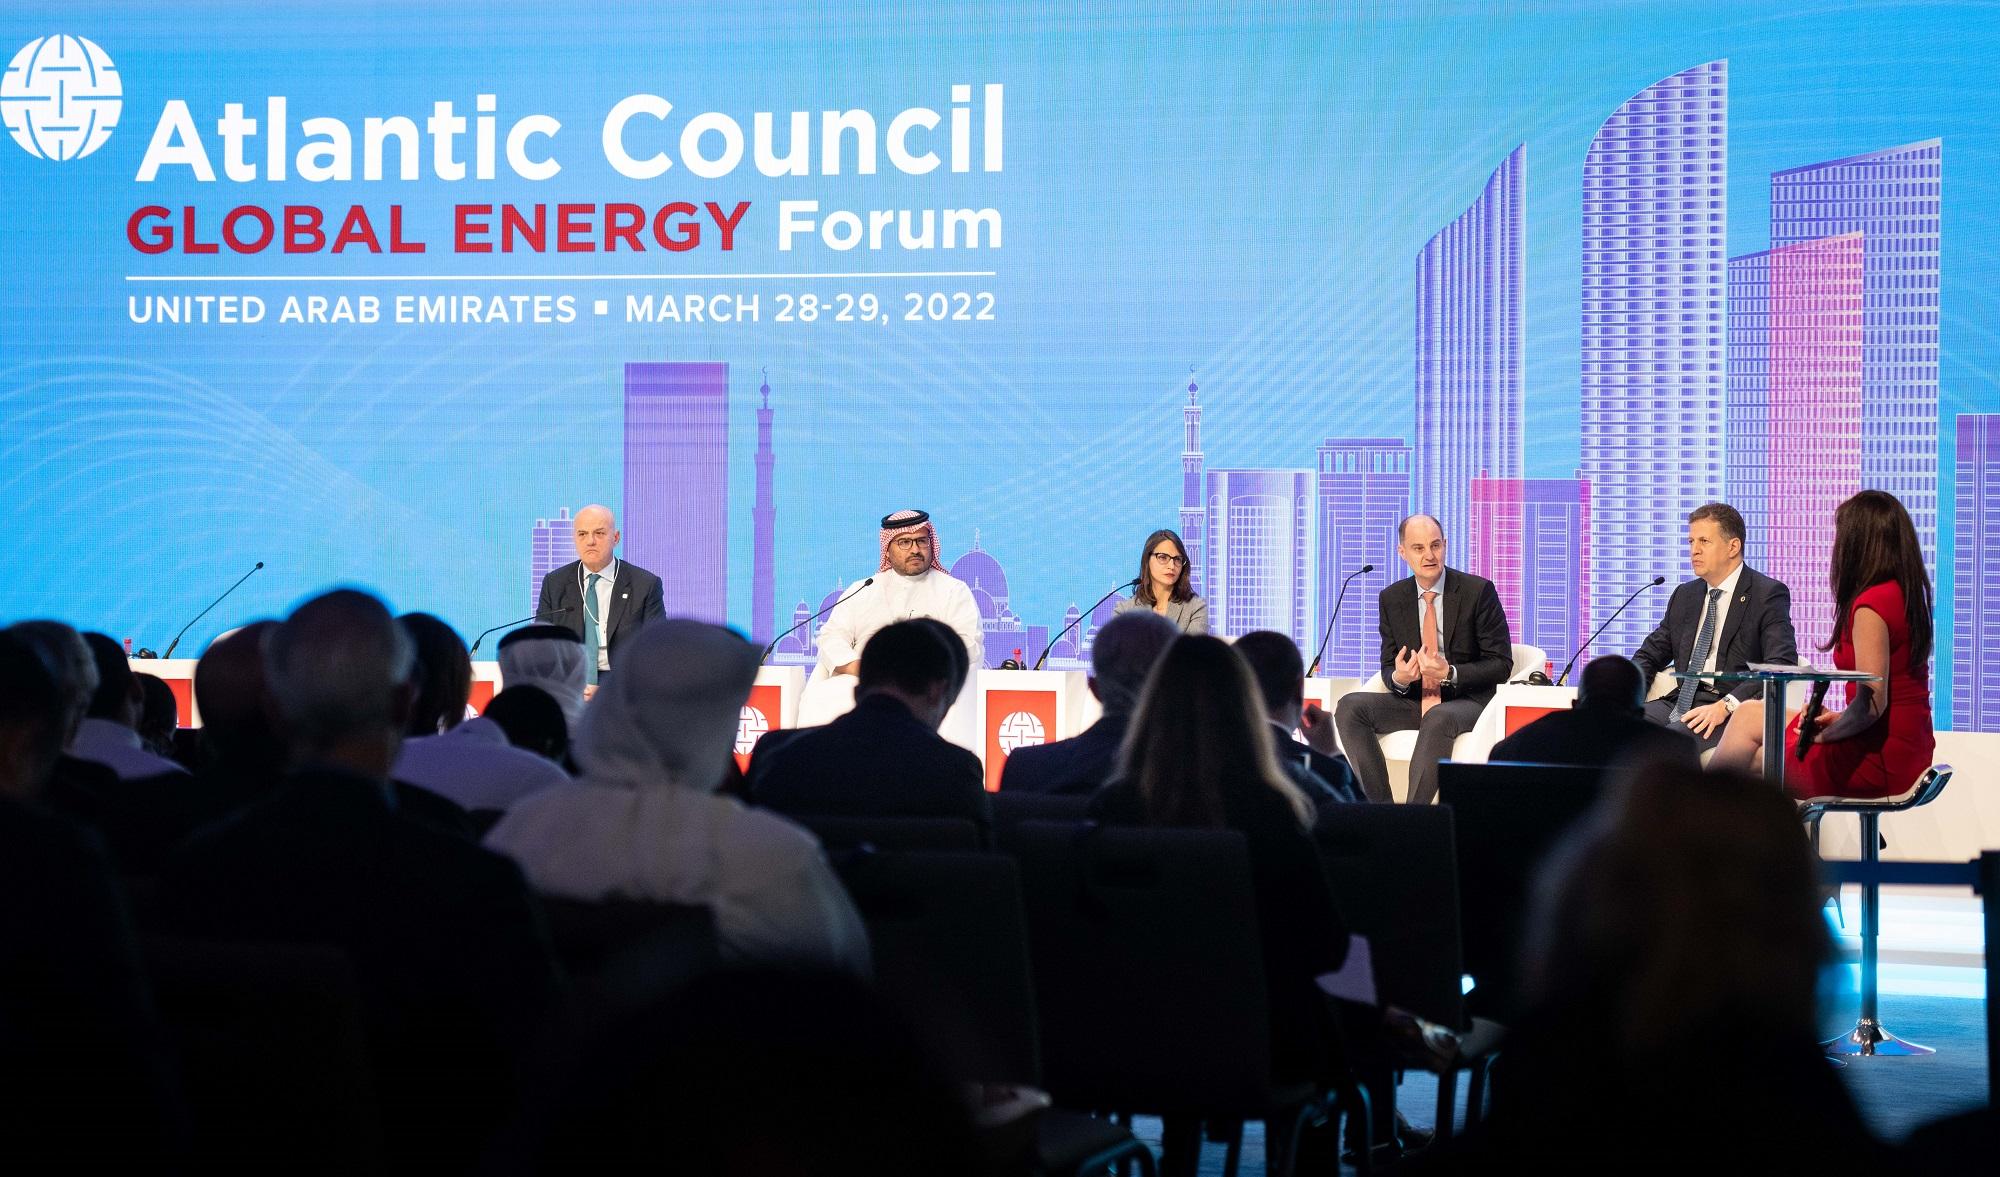 قادة وخبراء عالميون يبحثون مستقبل قطاع الطاقة عبر منصة القمة العالمية للحكومات 2022